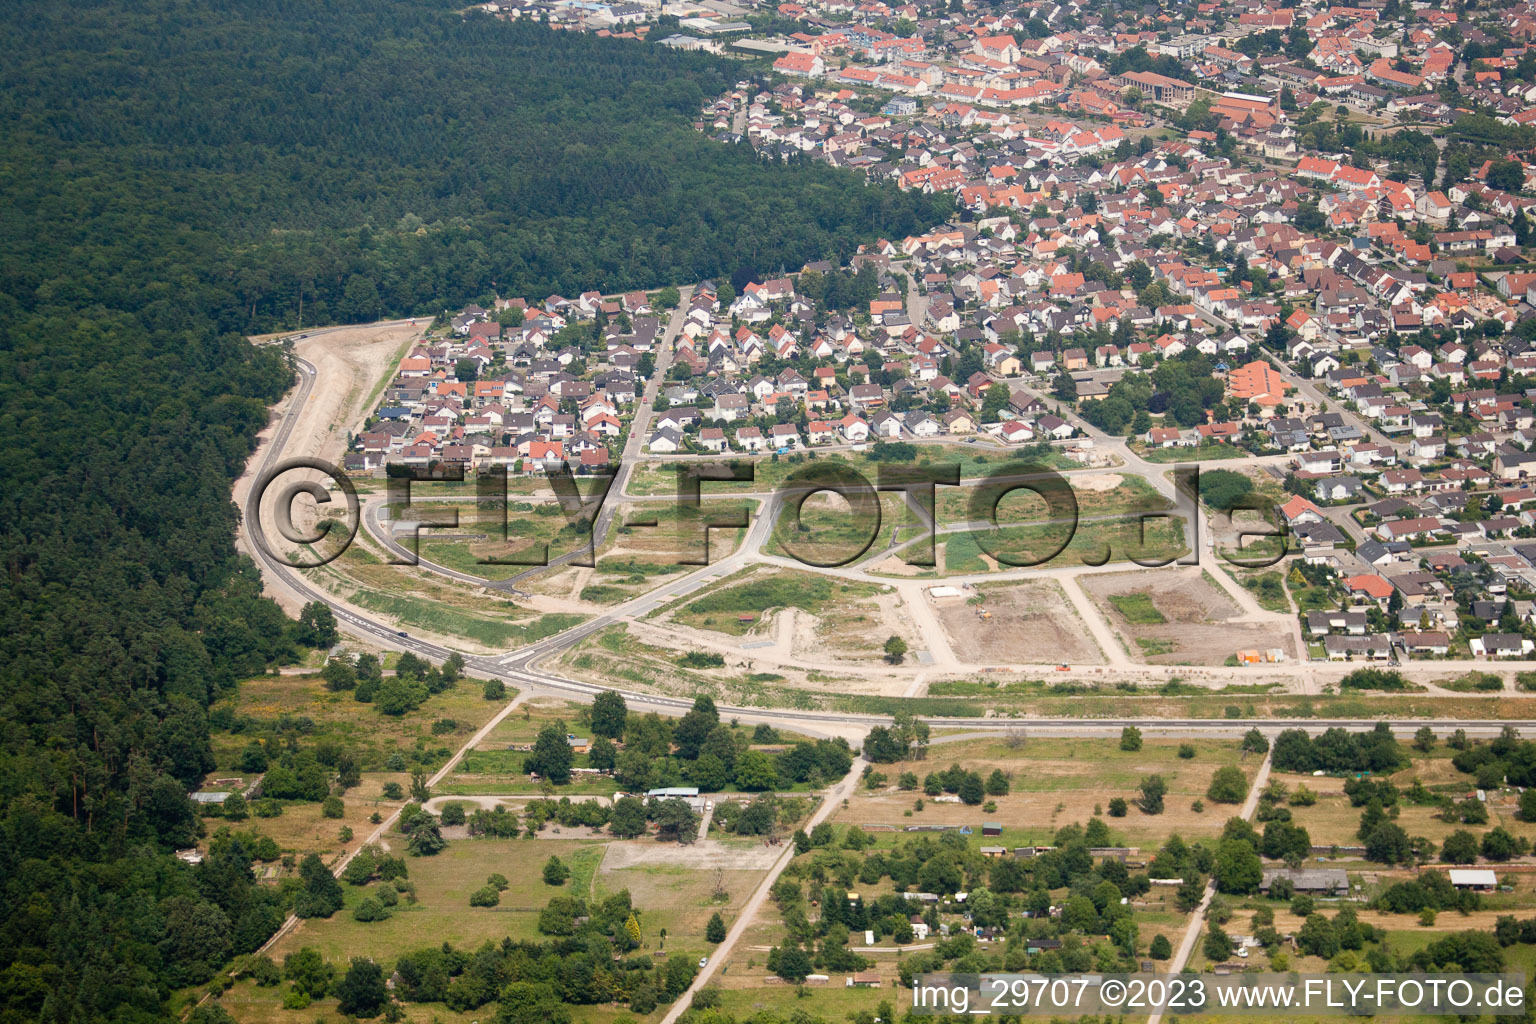 Luftaufnahme von Jockgrim, Neubaugebiet West im Bundesland Rheinland-Pfalz, Deutschland